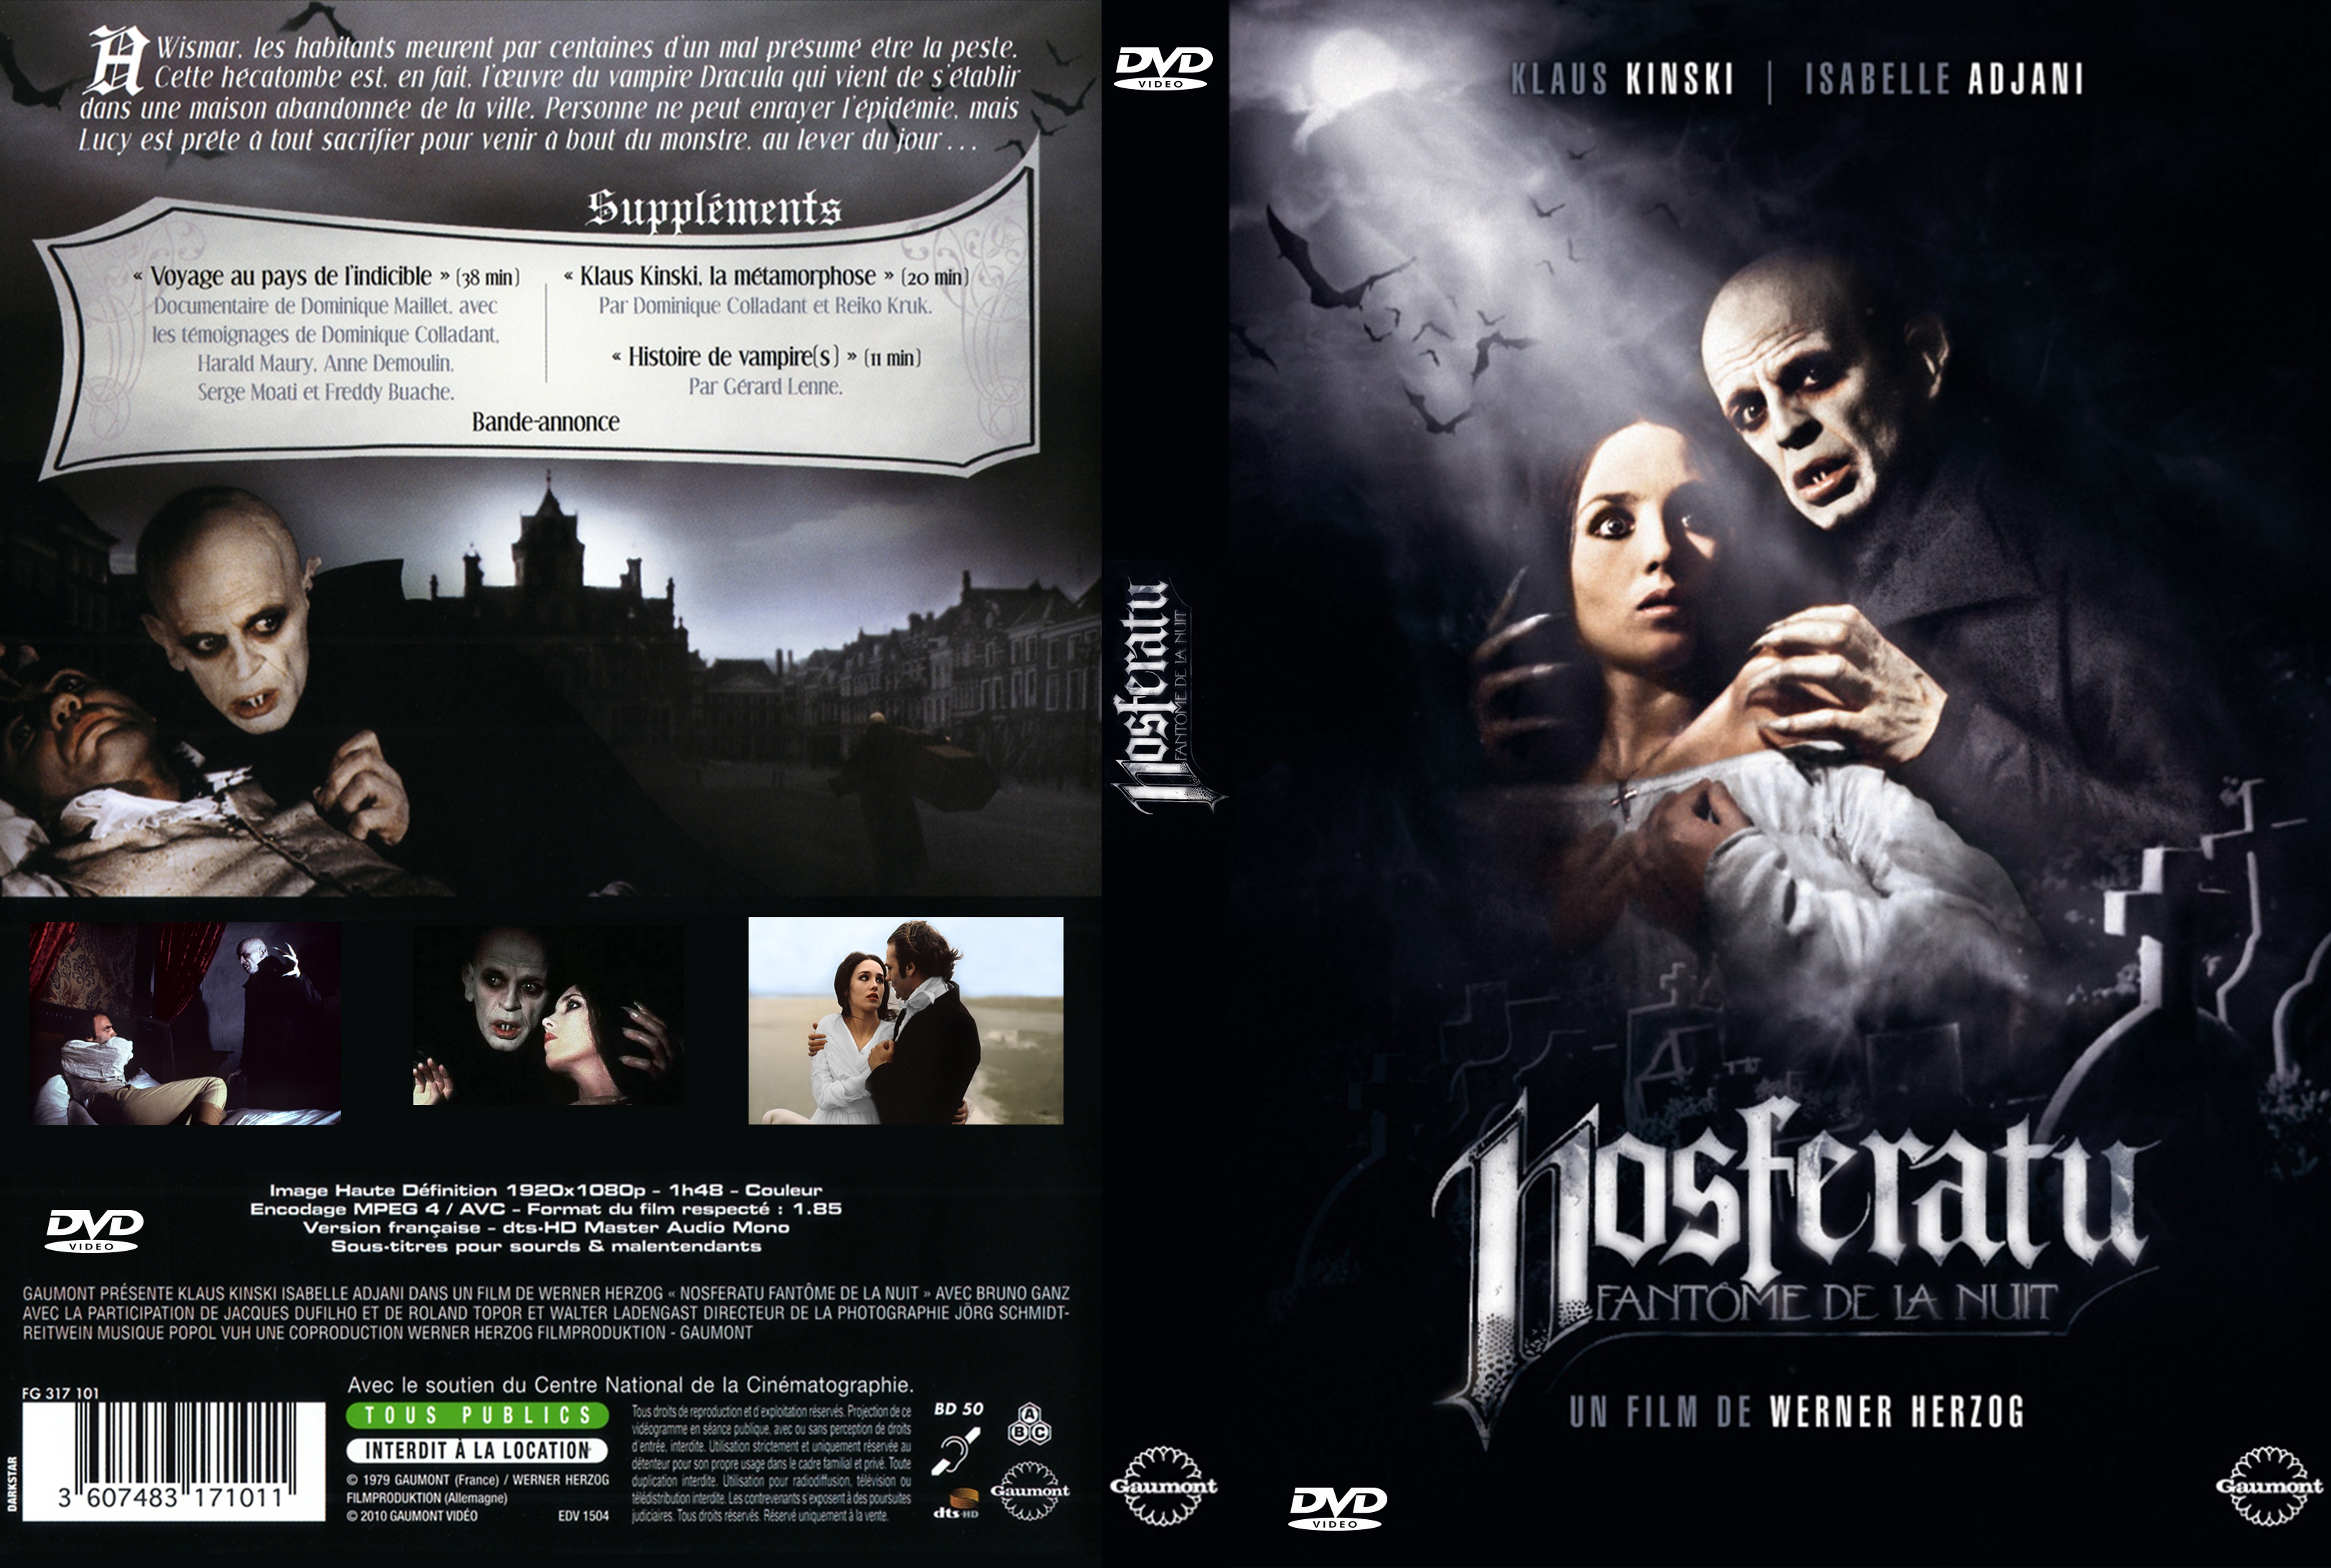 Jaquette DVD Nosferatu Fantome de la nuit custom